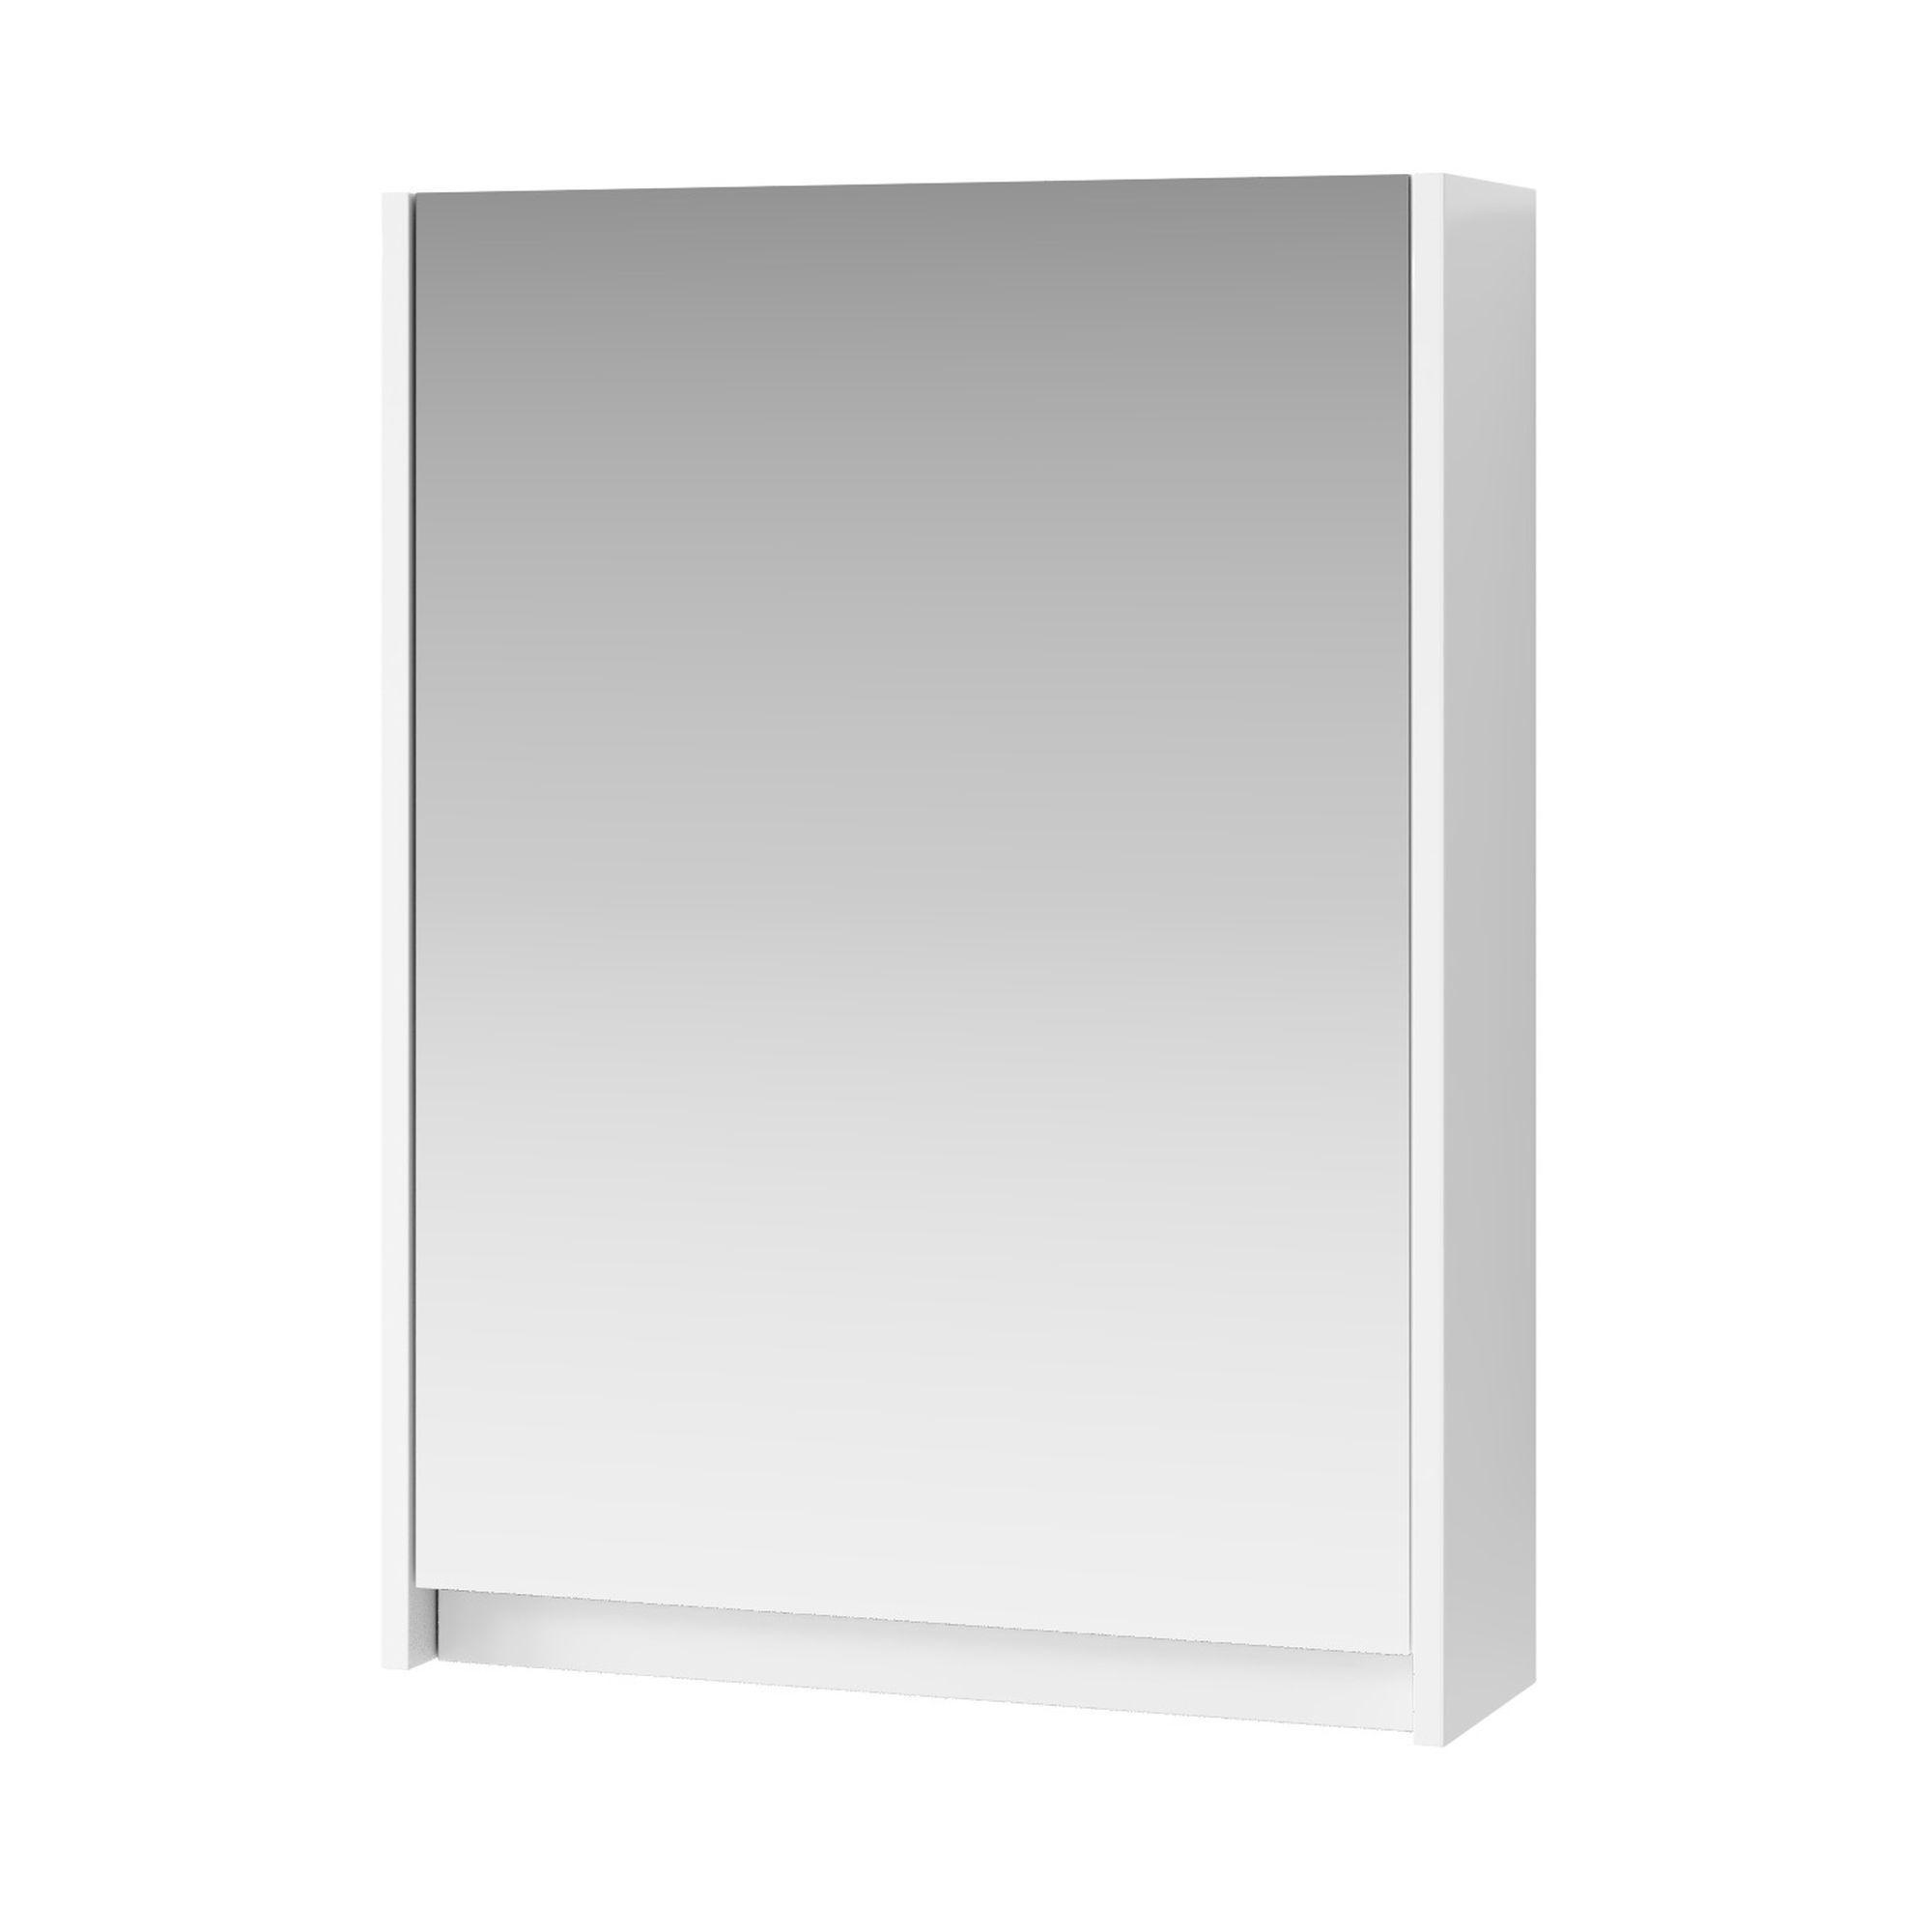 Леруа мерлен шкаф для ванной. Шкаф зеркальный Квадро 60. Шкаф зеркальный Leroy Merlin. Шкаф зеркальный универсальный Леруа 60см 5005. Зеркало-шкаф Квадро 60 см бел/Водолей.